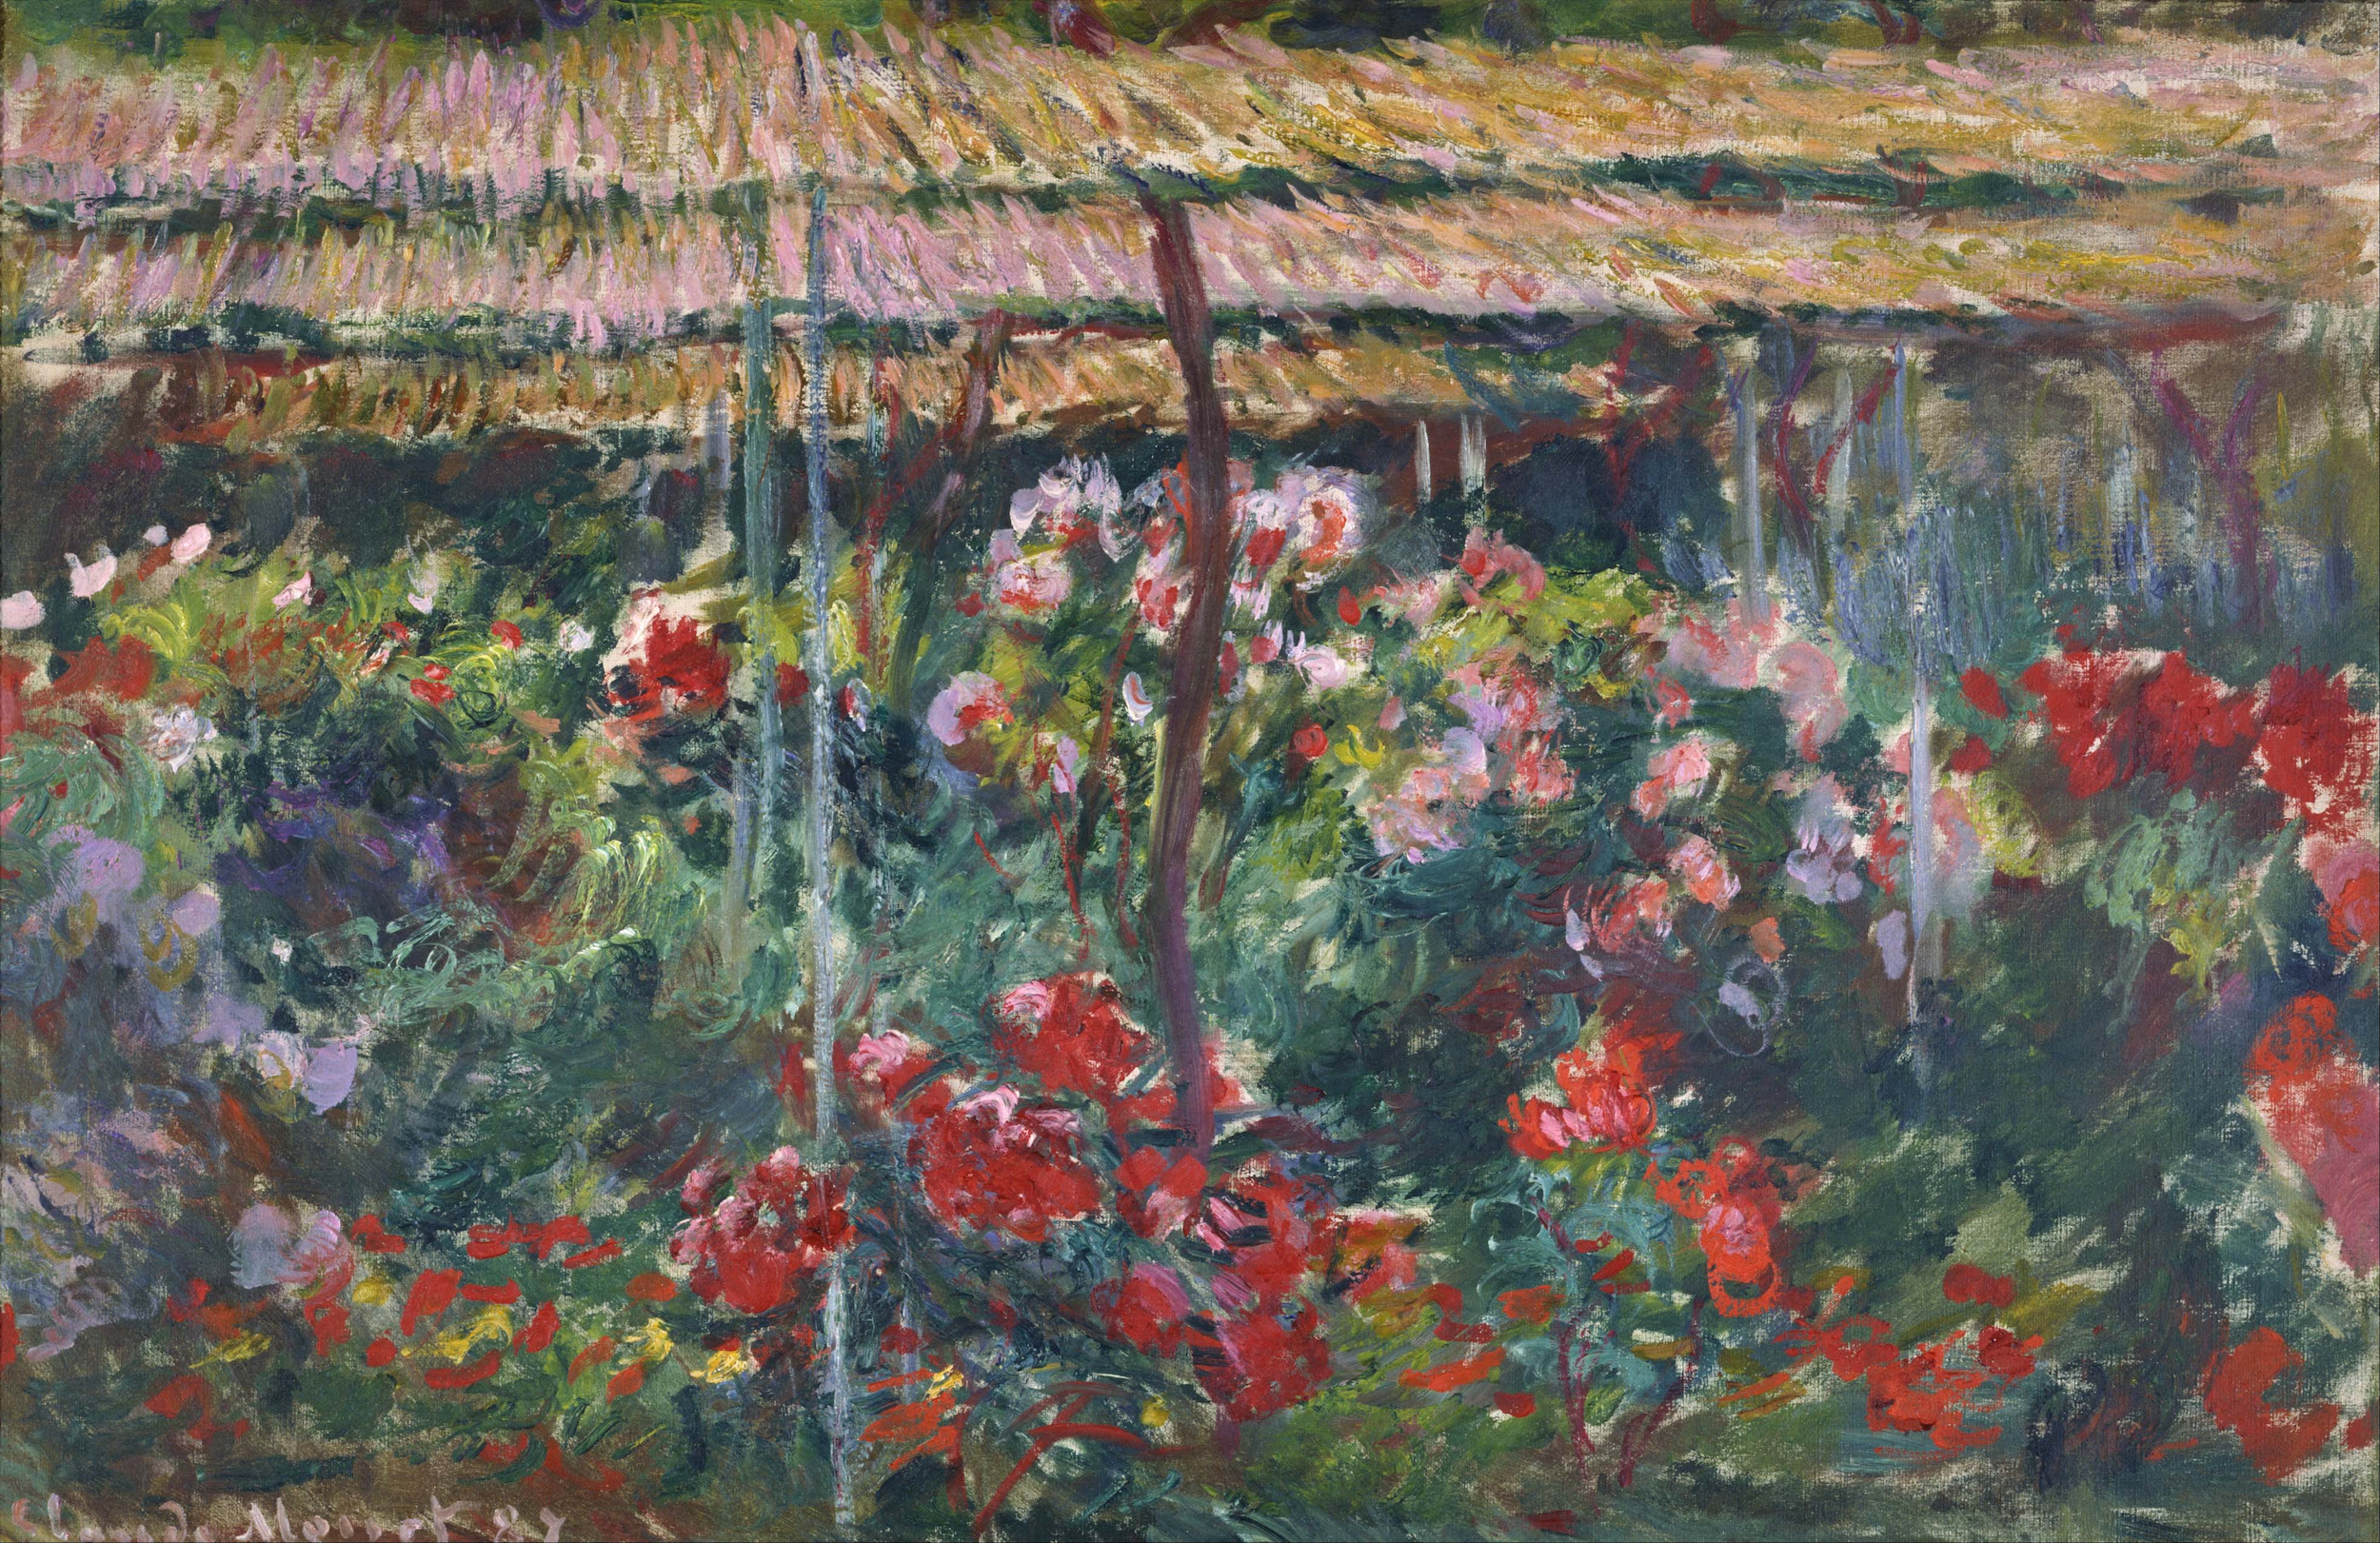 しゃくやくの花園 by Claude Monet - 1887年 - 100 x 65.3 cm 